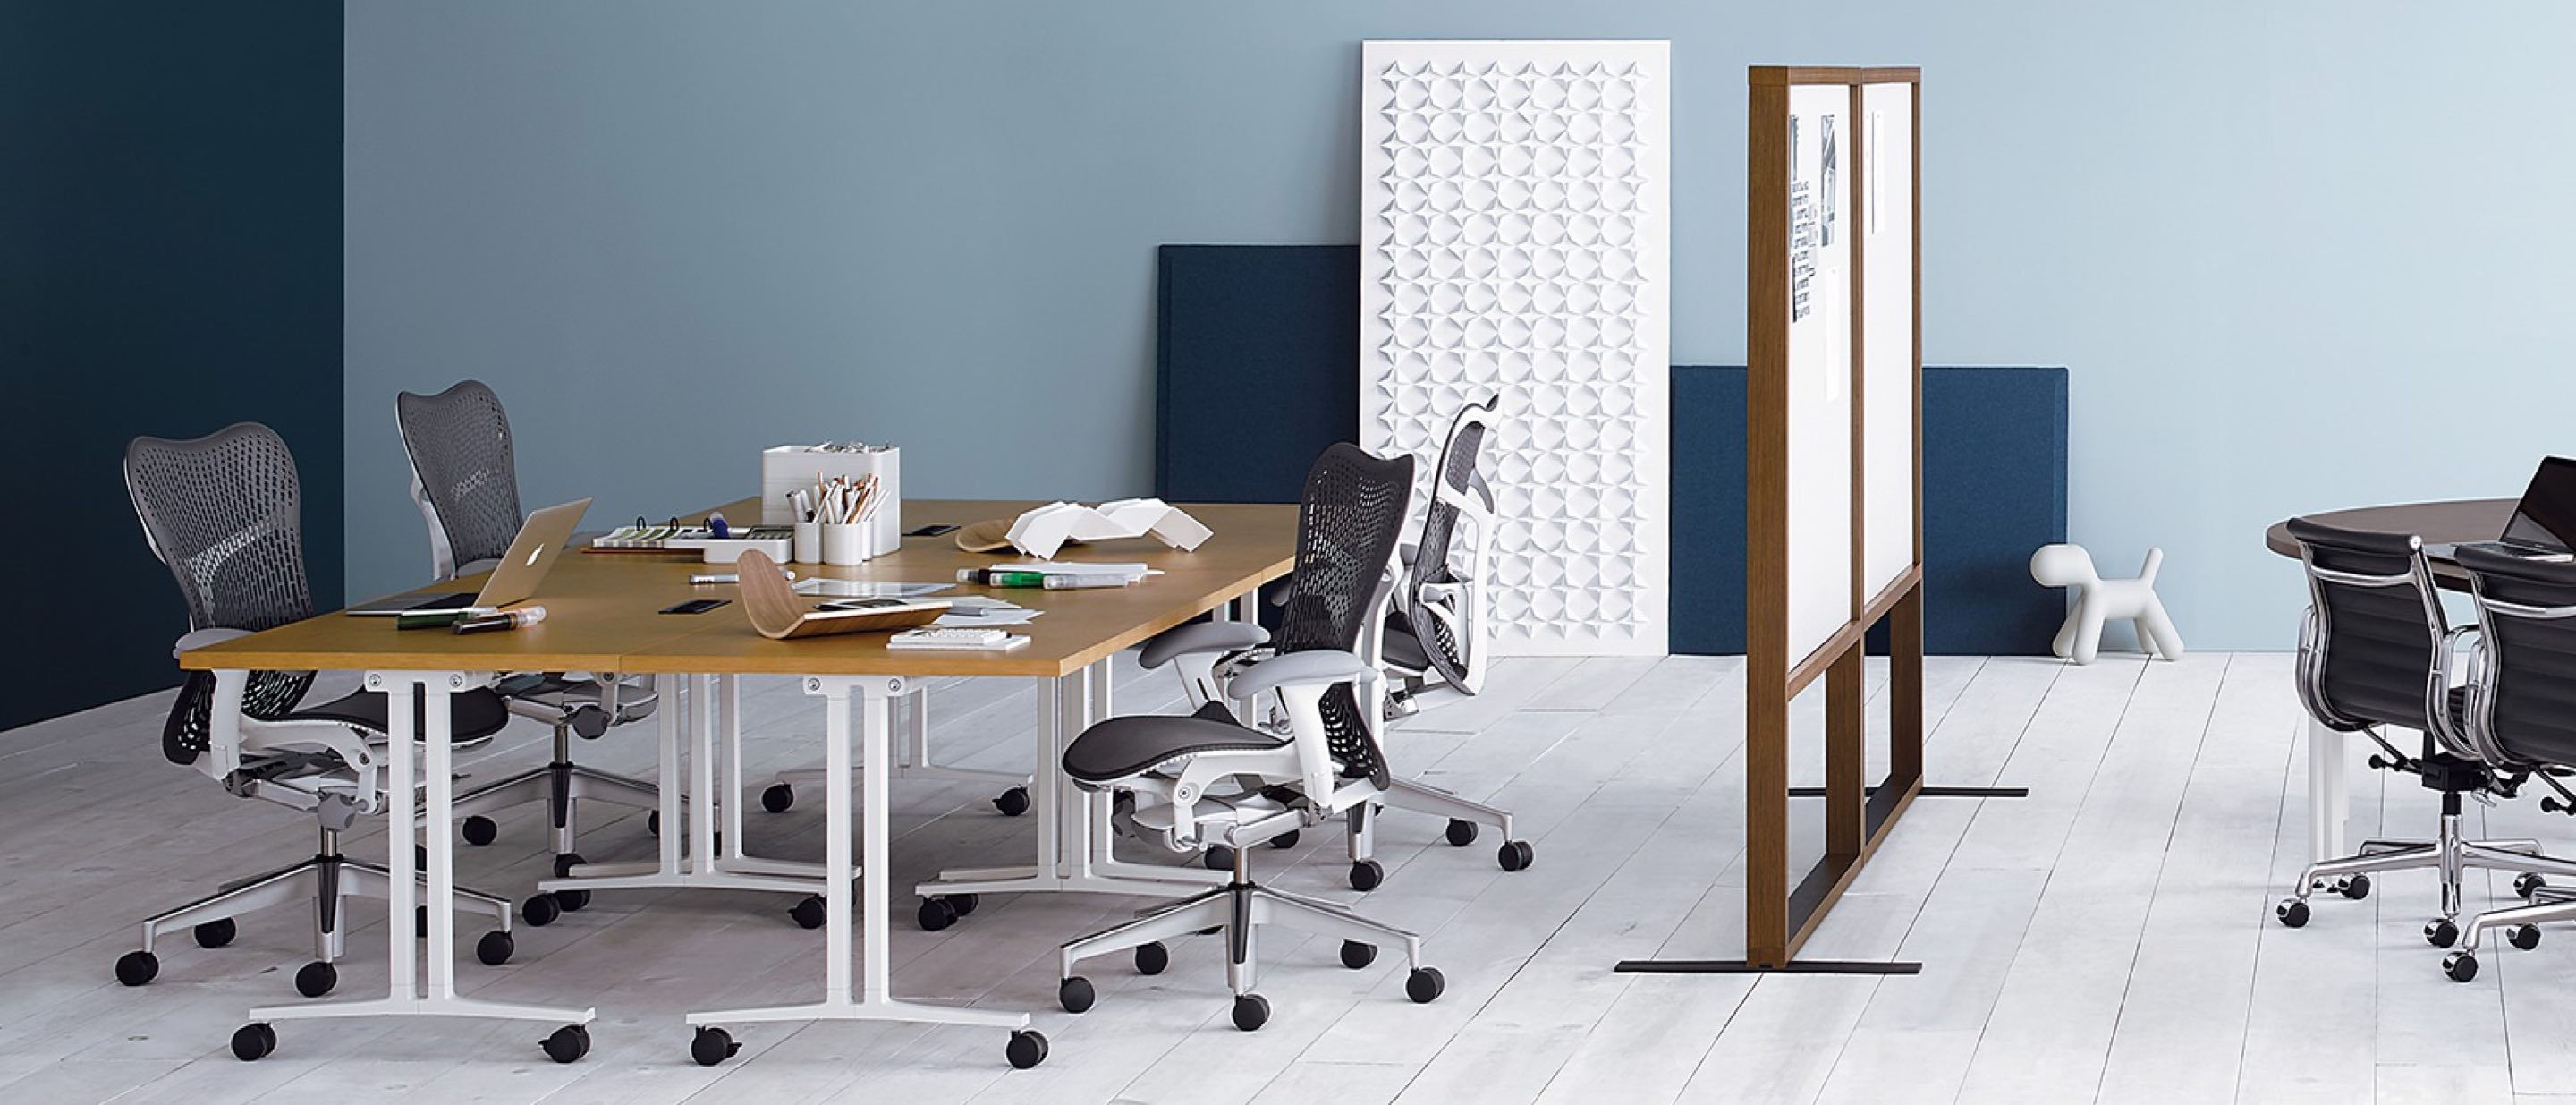 Sala com mesas Everywhere configuradas em formado de oficina à esquerda e espaço para reunião à direita.